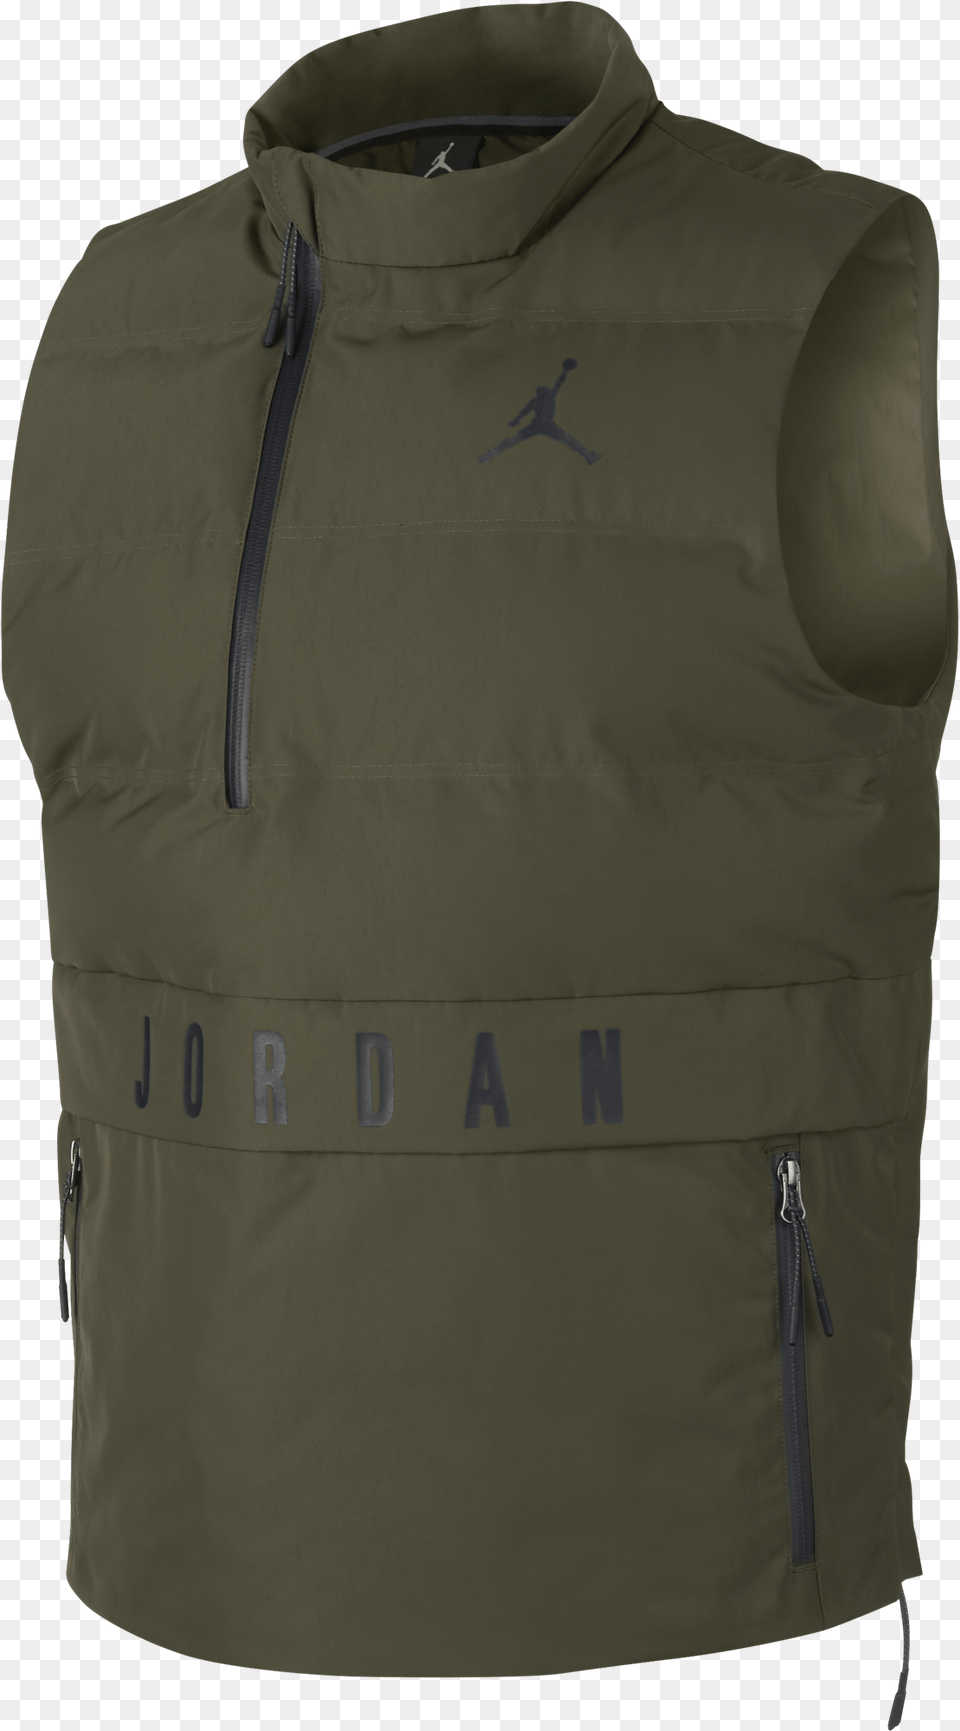 Air Jordan 23 Tech Vest Air Jordan Tech Vest, Clothing, Lifejacket, Coat, Jacket Png